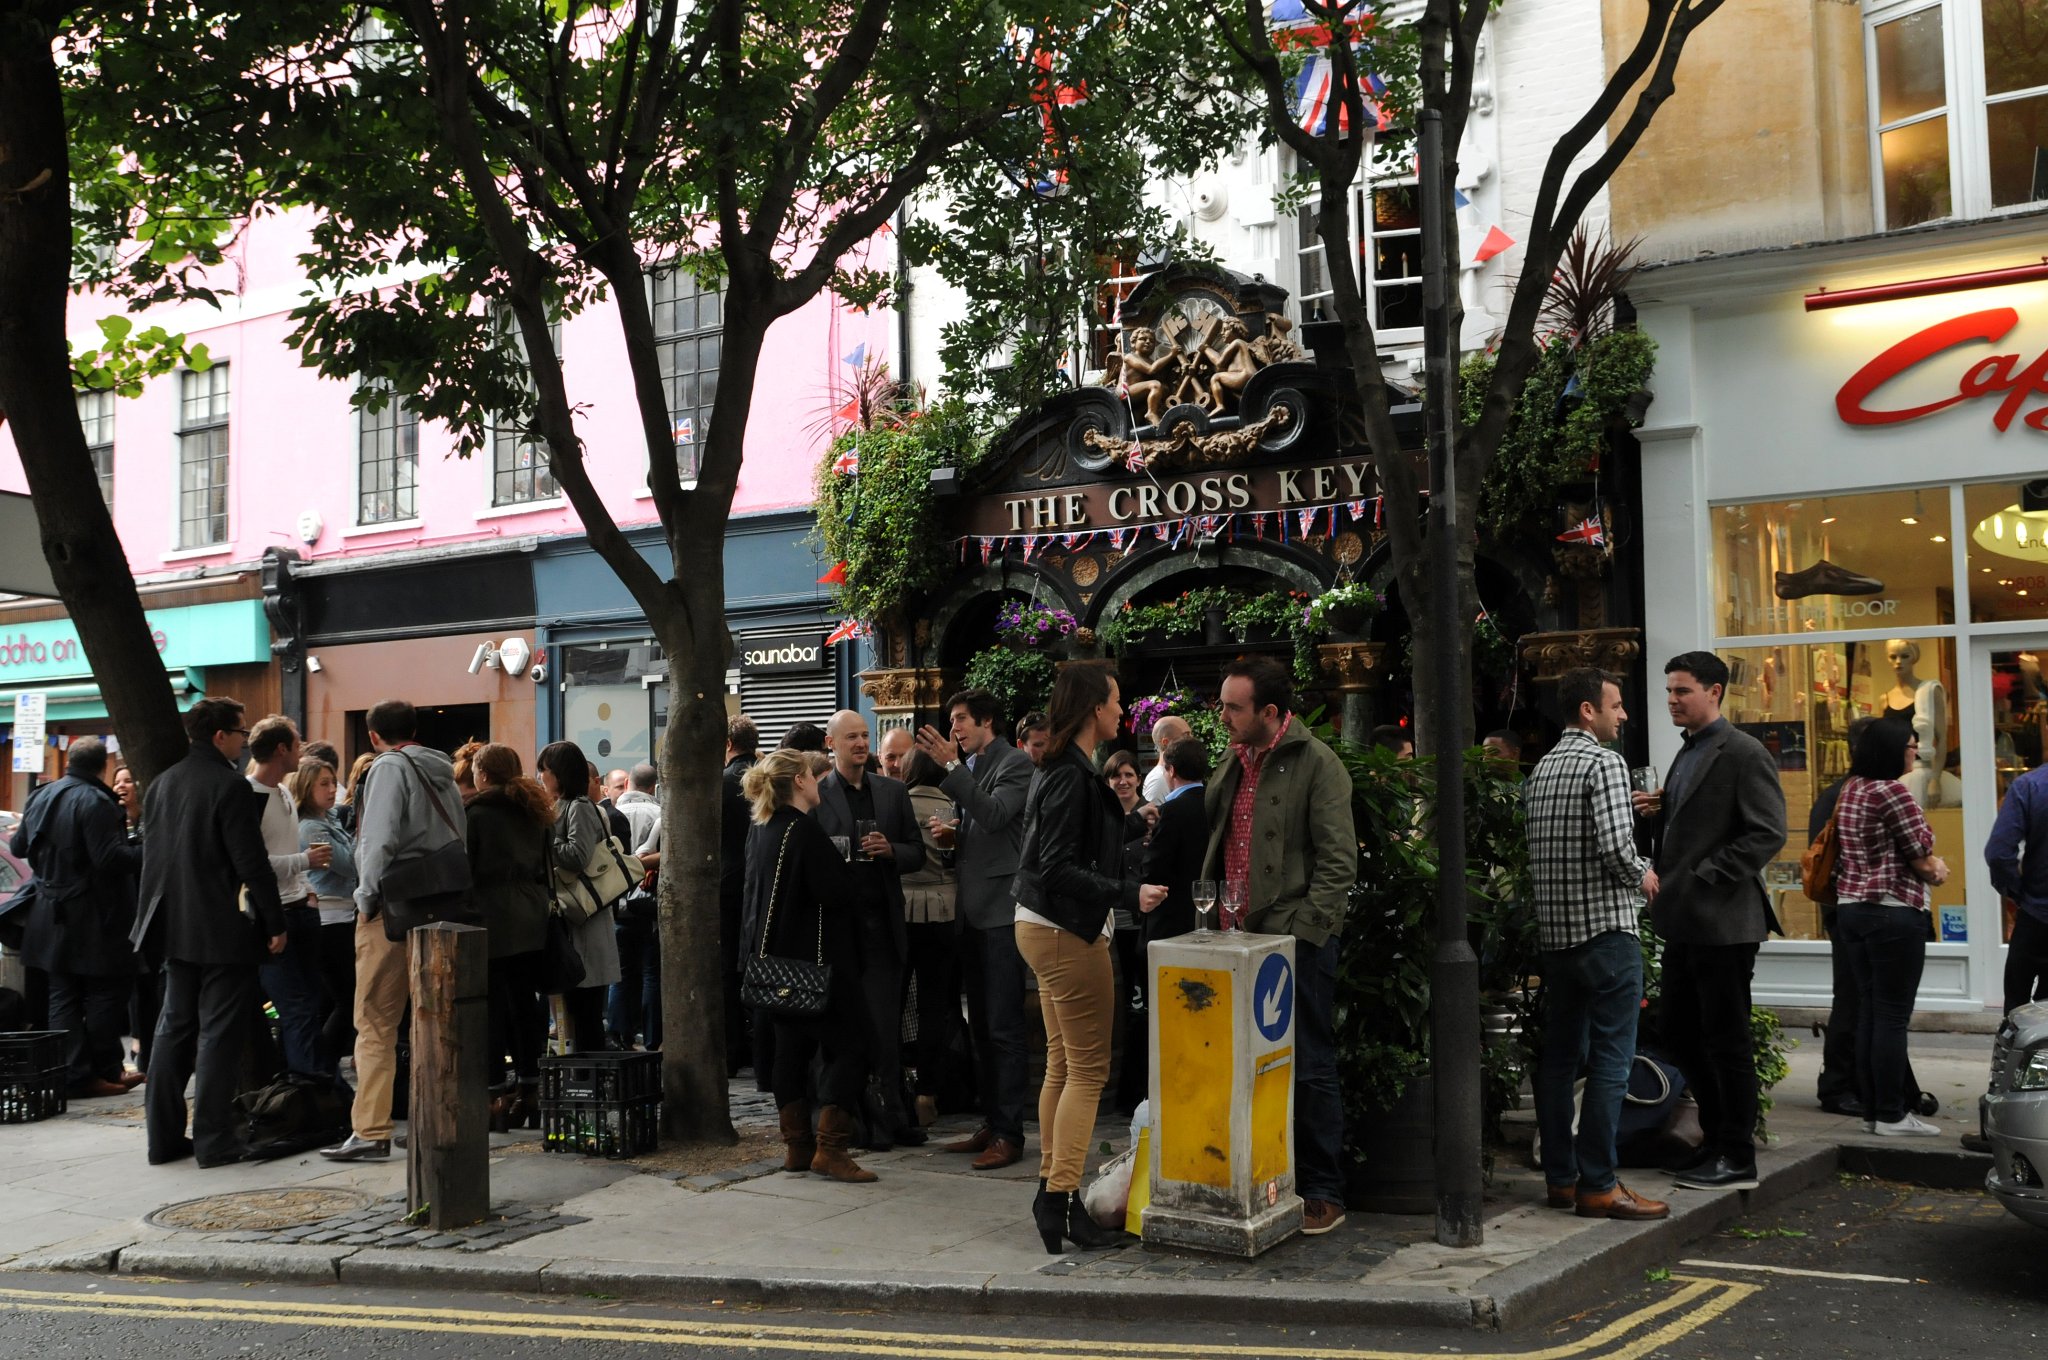 DSC_6001_1.jpg - V Londýně mě šokovaly davy lidí stojící před puby. U nás si všichni sedáme do interiéru nebo na předzahrádky, postojíme maximálně u baru. Nedovedeme si představit, že stojíme před restaurací s umělohmotným kelímkem v ruce. Pro Londýňany je to běžný zvyk. Takže v pozdním pátečním odpoledni potkáte jako přes kopírák před každým barem hlouček postávajících manažerů v obleku, právníků a sekretářek...prostě každého, kdo si chce po práci trošku oddechnout. 